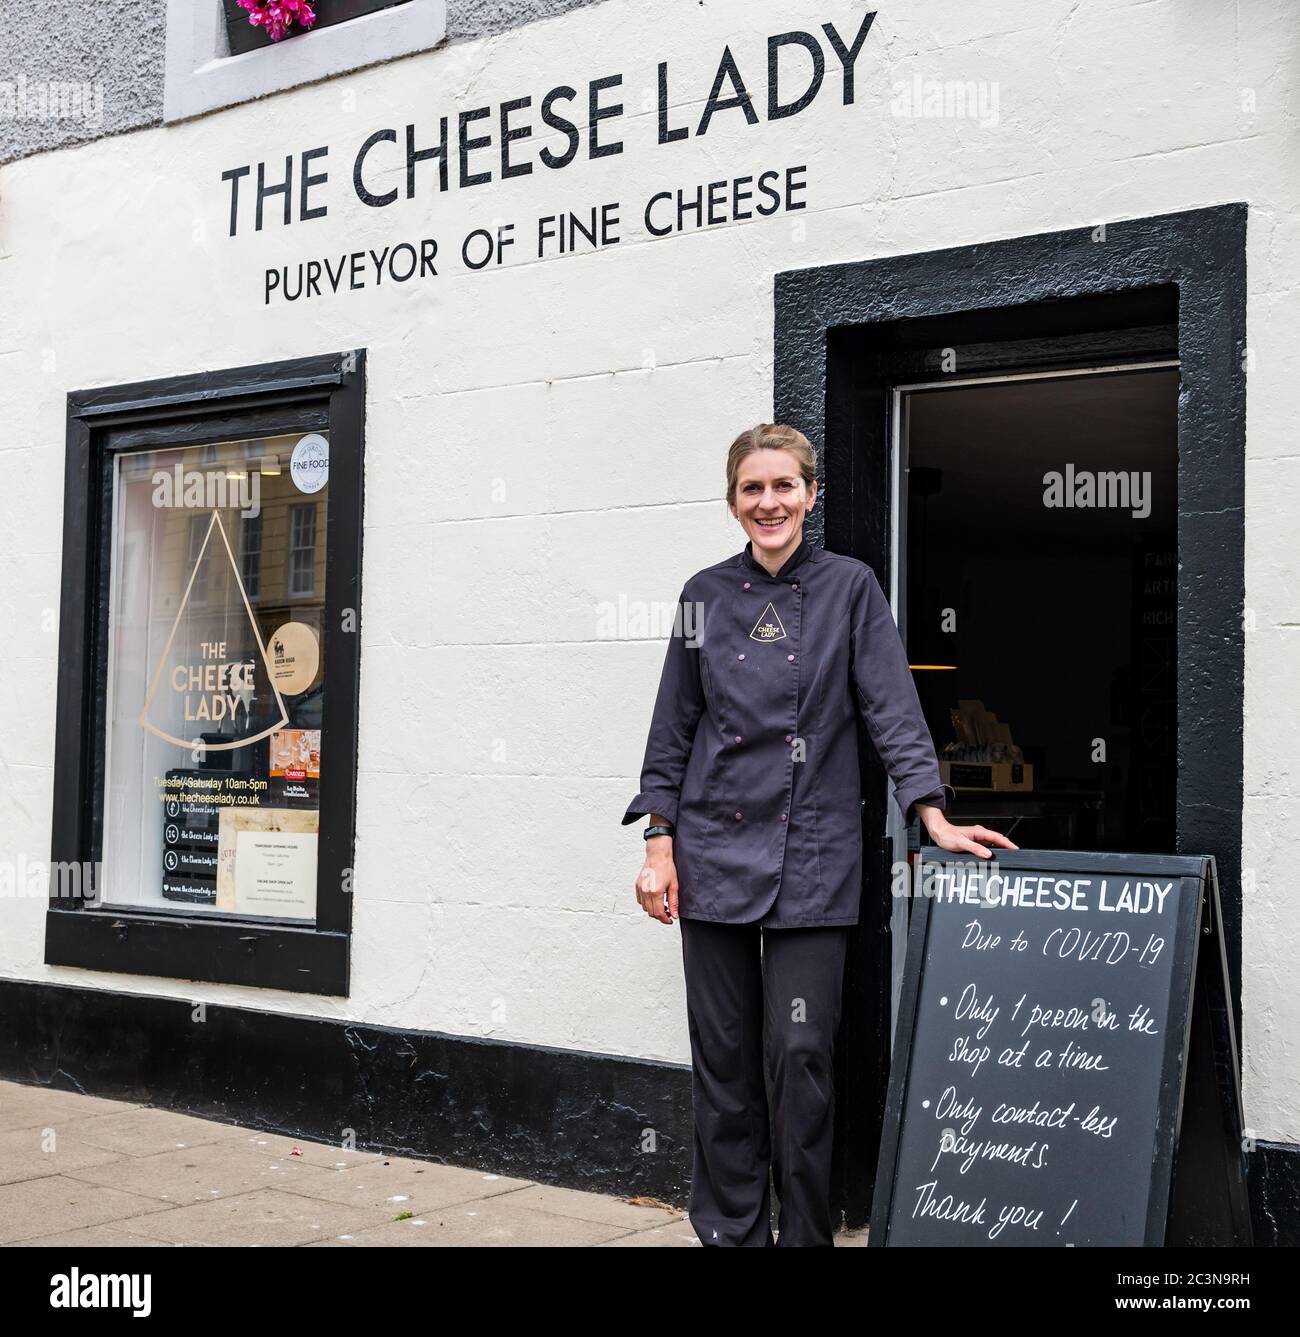 Svetlana Kukharchuk, propriétaire de la fromagerie Cheesemonger avec avis Covid-19, Haddington, East Lothian, Écosse, Royaume-Uni Banque D'Images